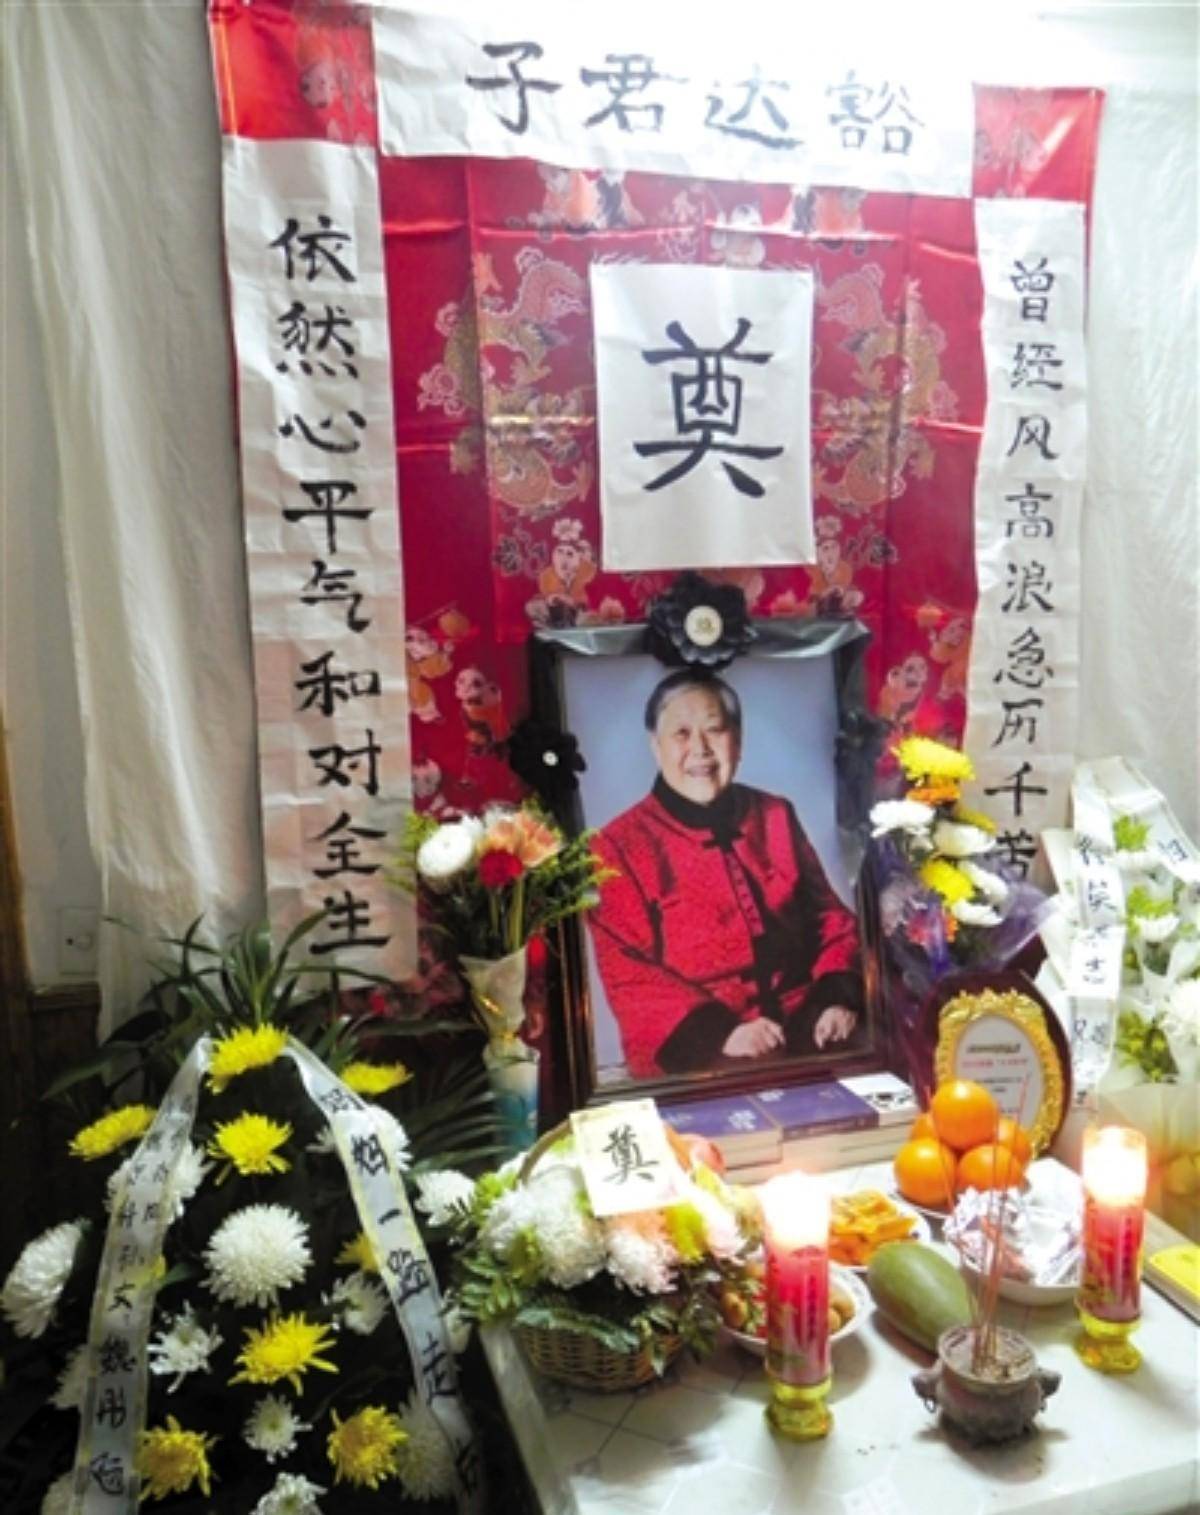 2014年1月13日,许燕吉在南京去世,享年81岁